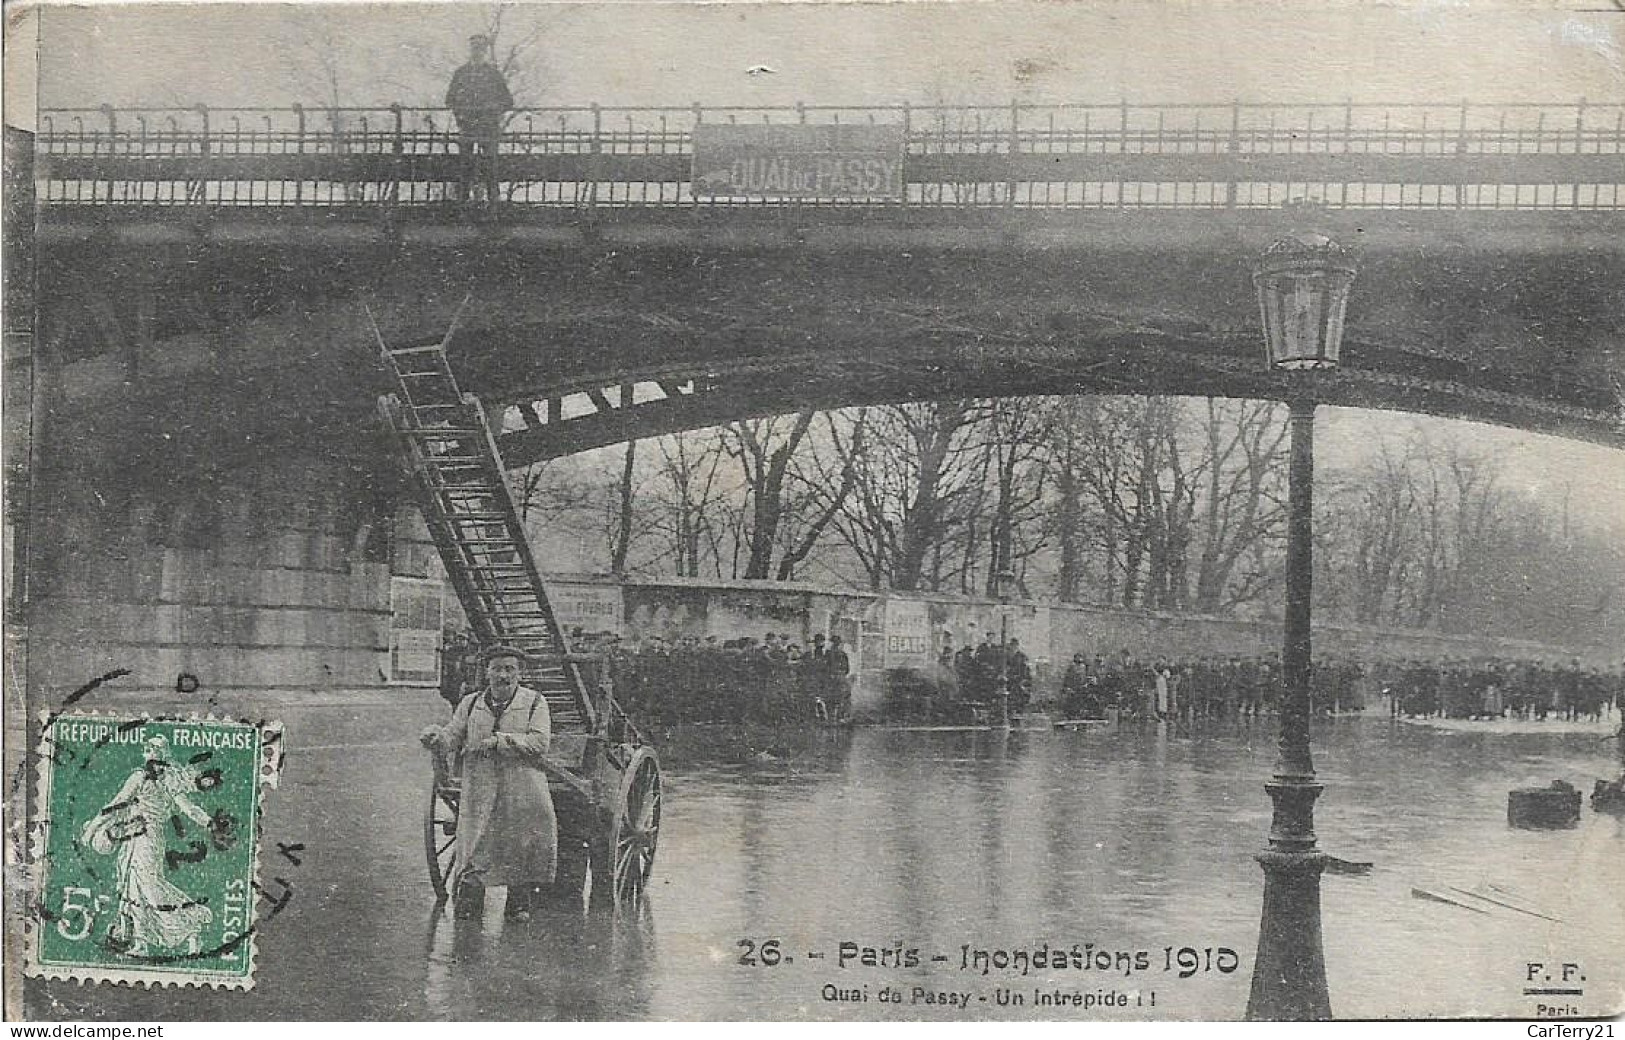 75. PARIS. INONDATIONS 1910. QUAI DE PASSY. UN INTREPIDE. - Überschwemmung 1910